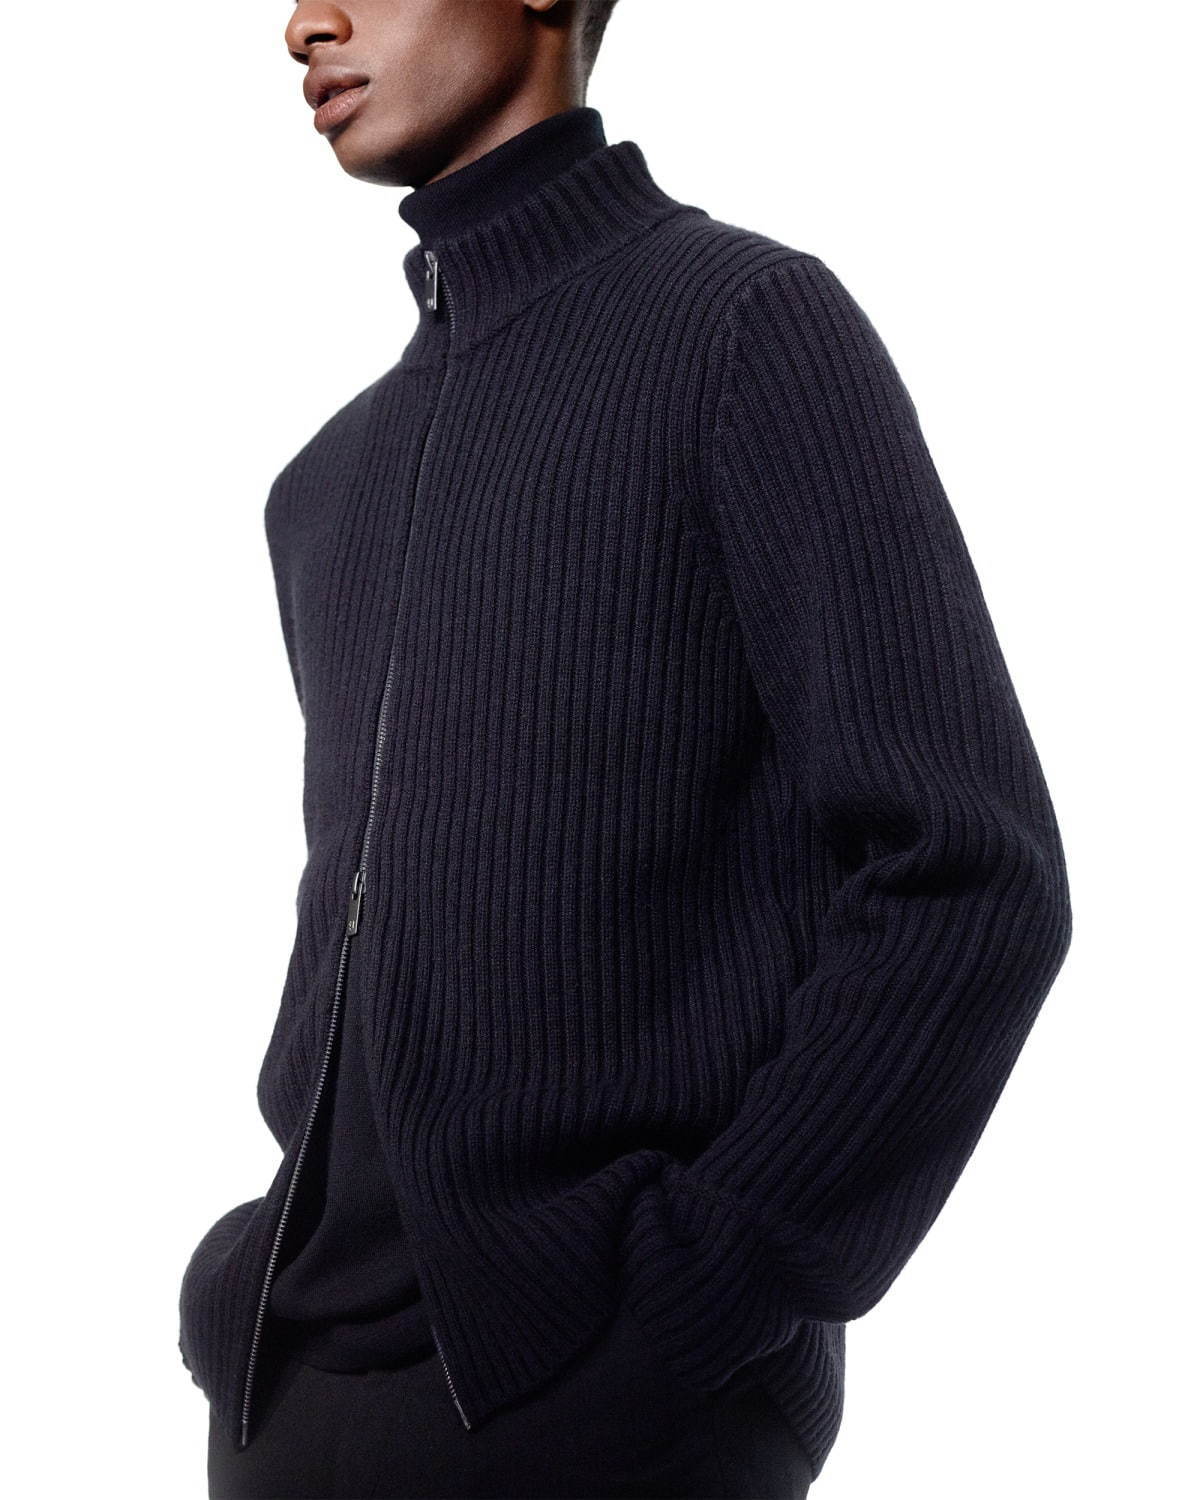 「＋J」着用アイテム
ミドルゲージリブフルジップセーター(長袖) 6,990円
メリノブレンドタートルネックセーター(長袖) 3,990円
ウールブレンドイージーパンツ 6,990円